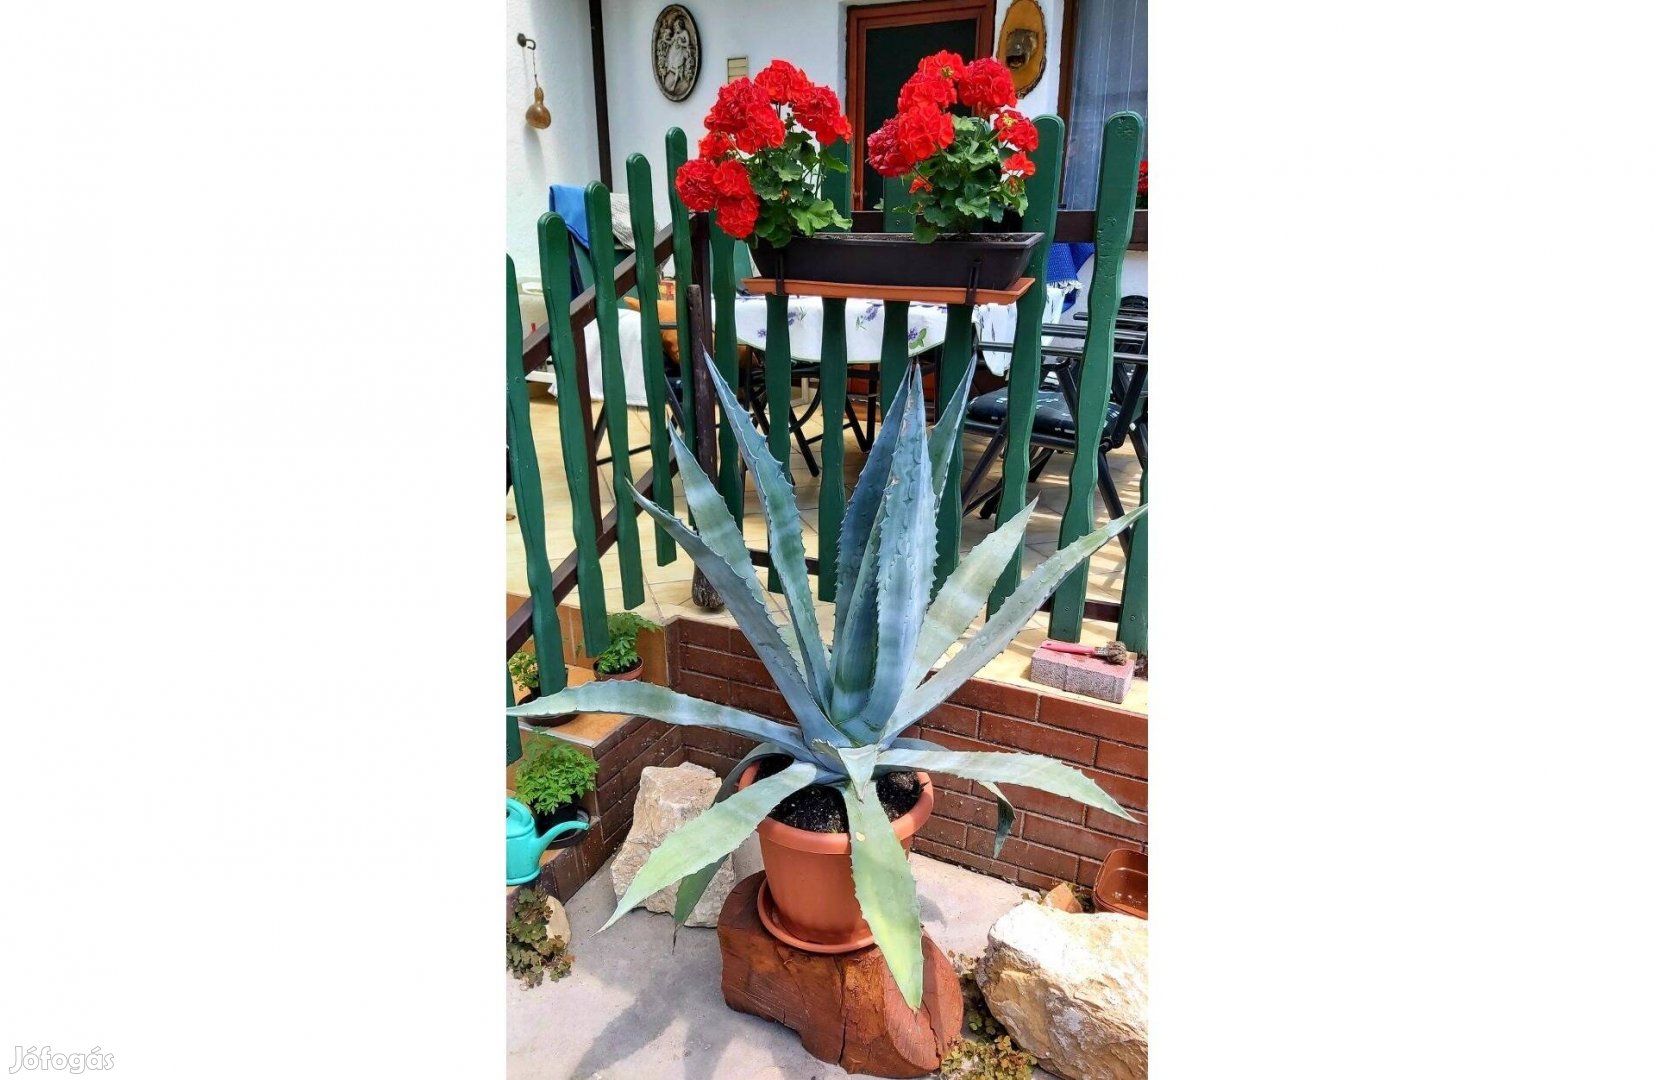 Eladók gyönyörű, egyedi egzotikus kaktuszok